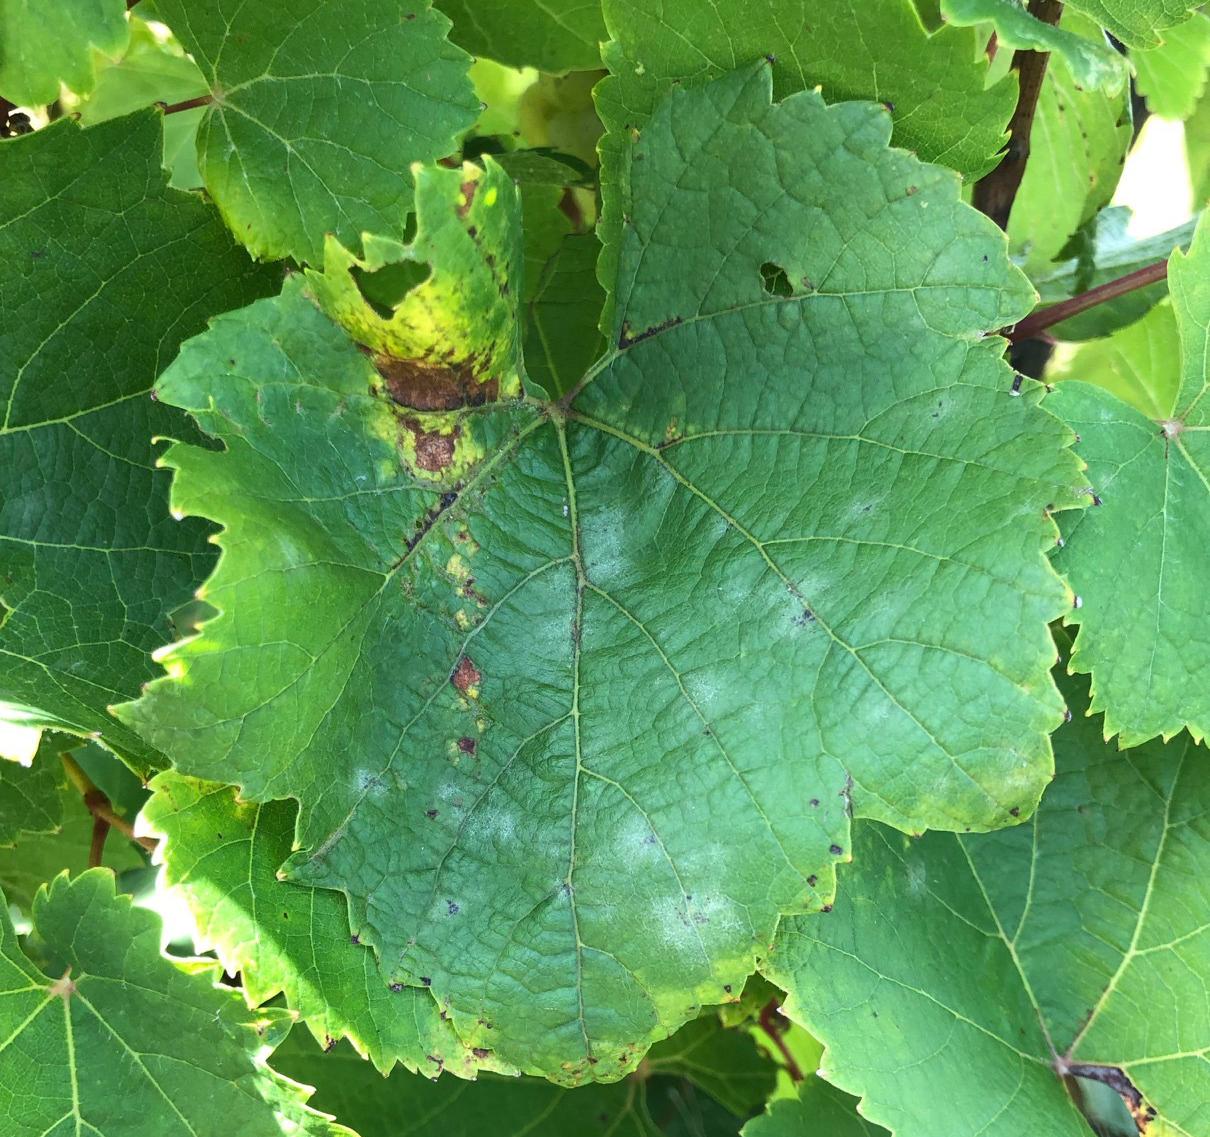 Downy mildew and powdery mildew symptoms on the same leaf